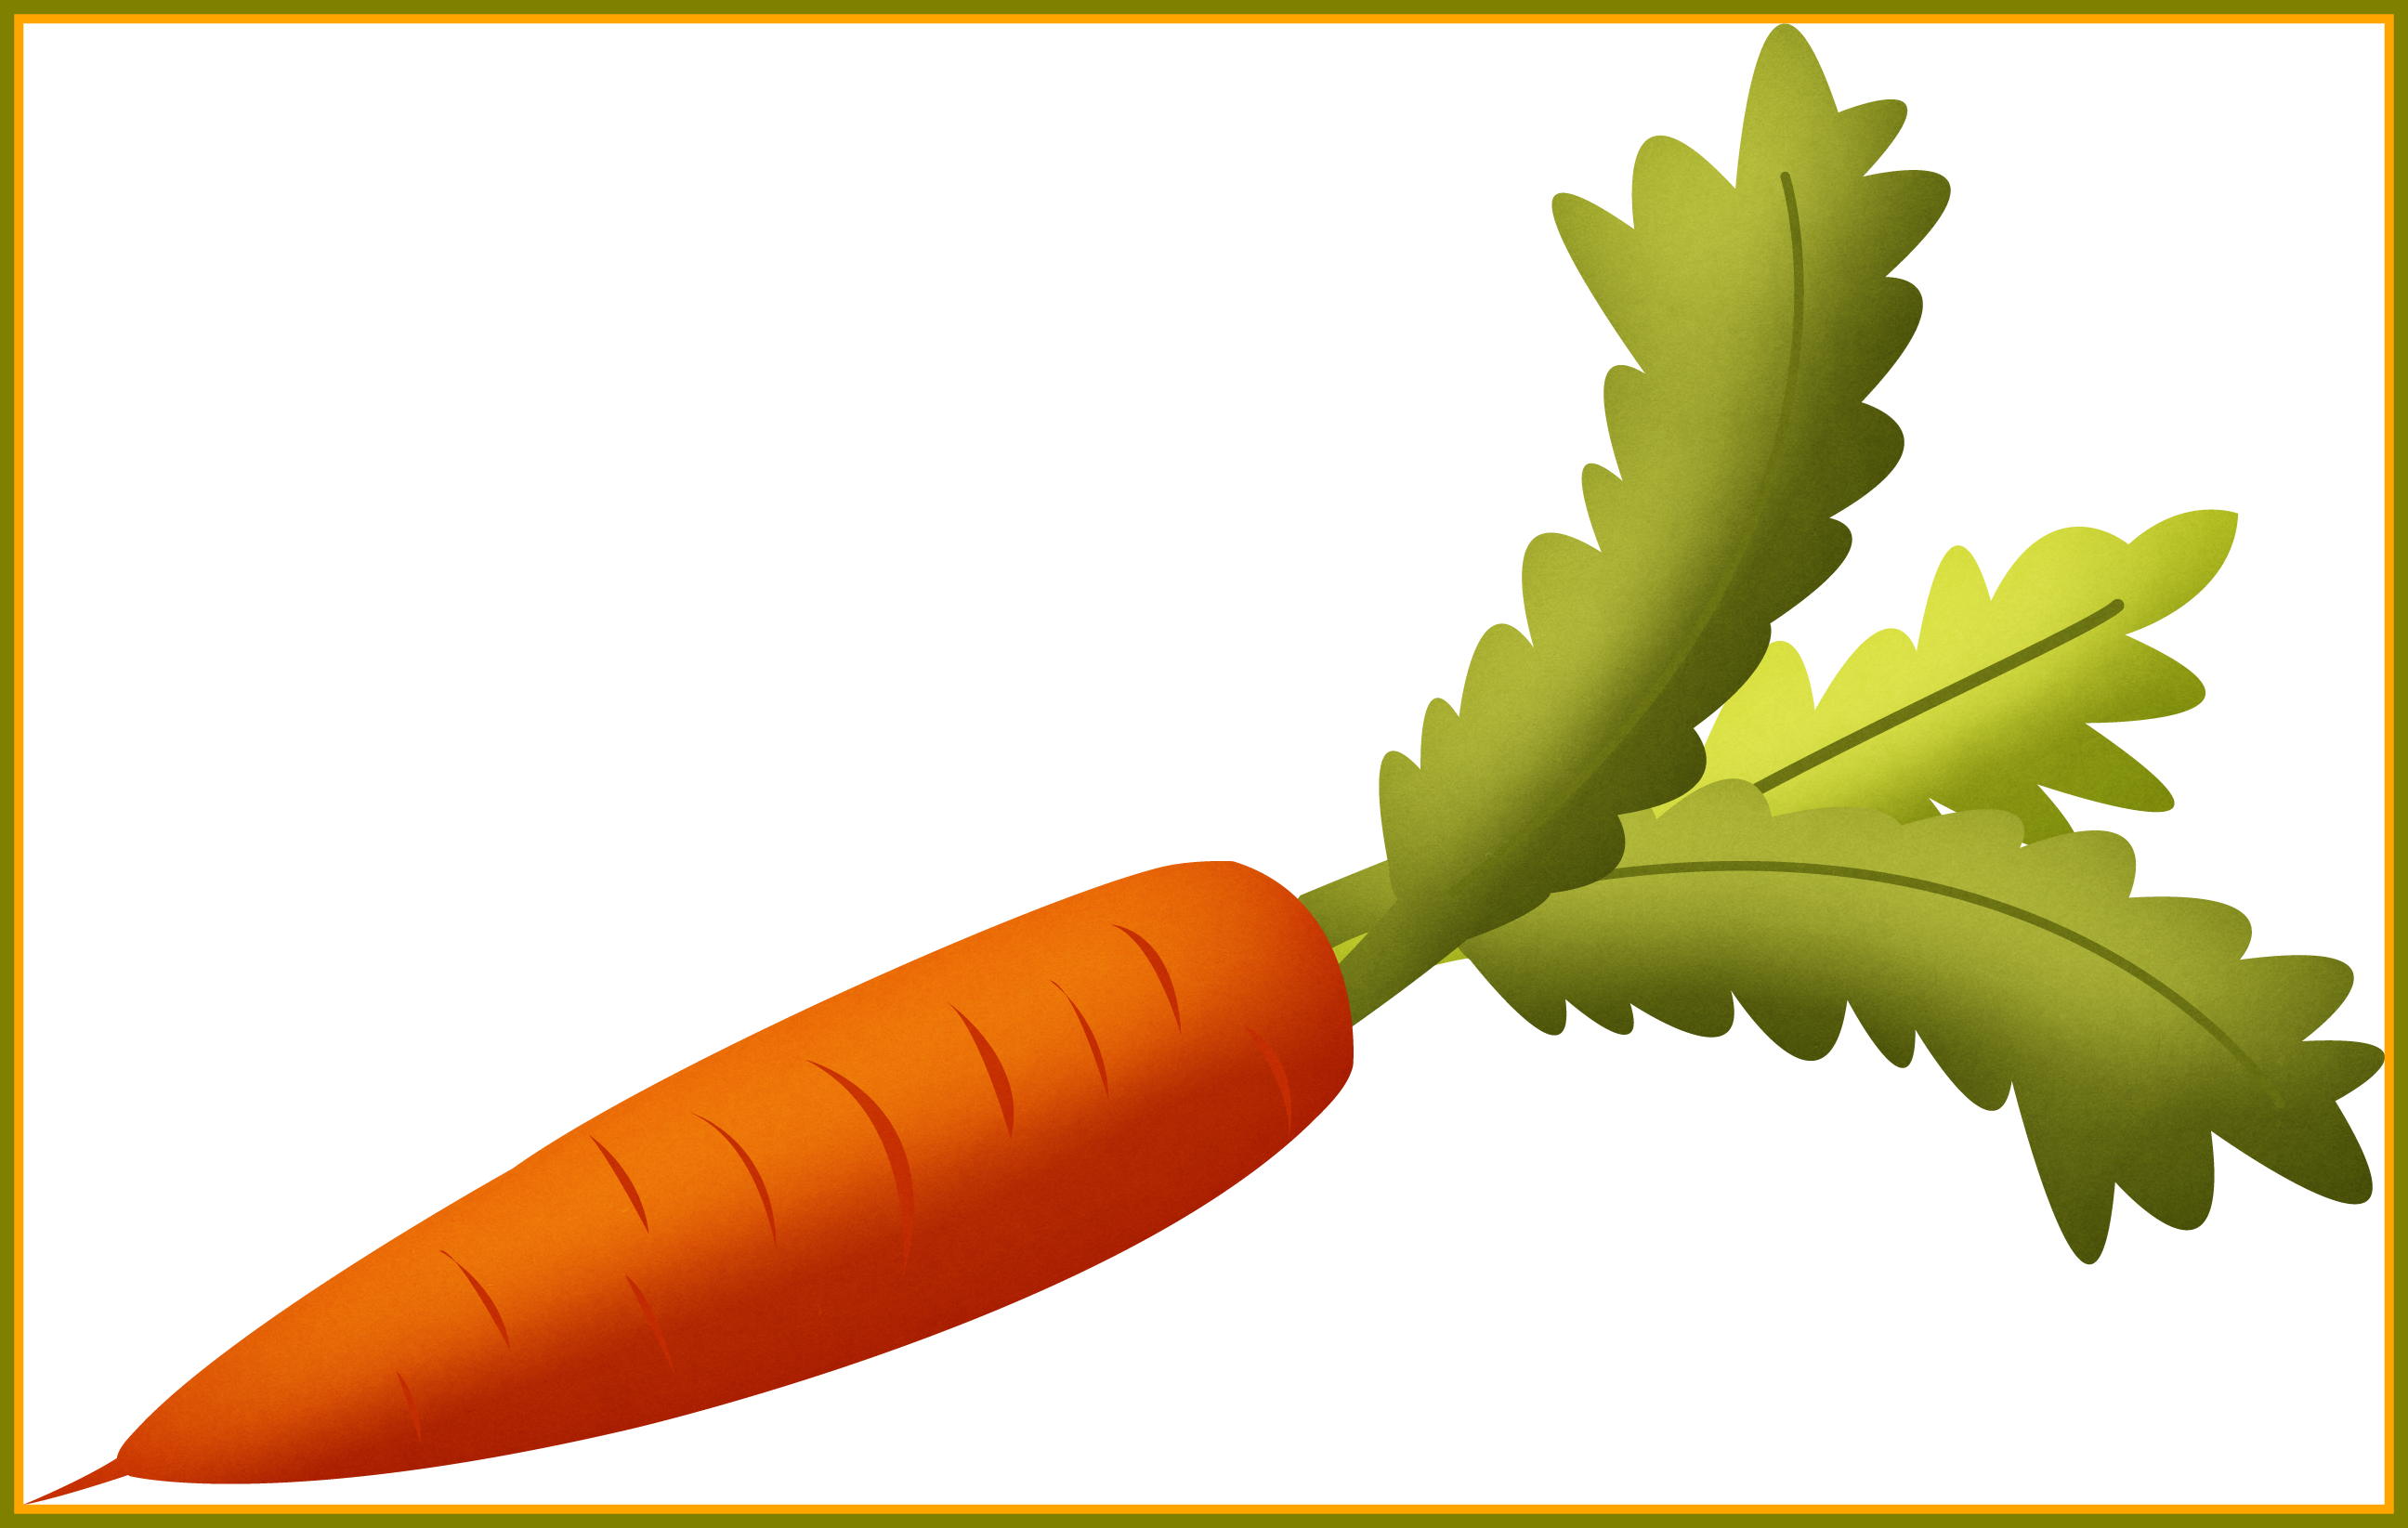 卡通胡蘿蔔笑臉圖, 可愛胡蘿蔔, 卡通蔬菜插畫, 橙色蔬菜素材圖案，PSD和PNG圖片免費下載